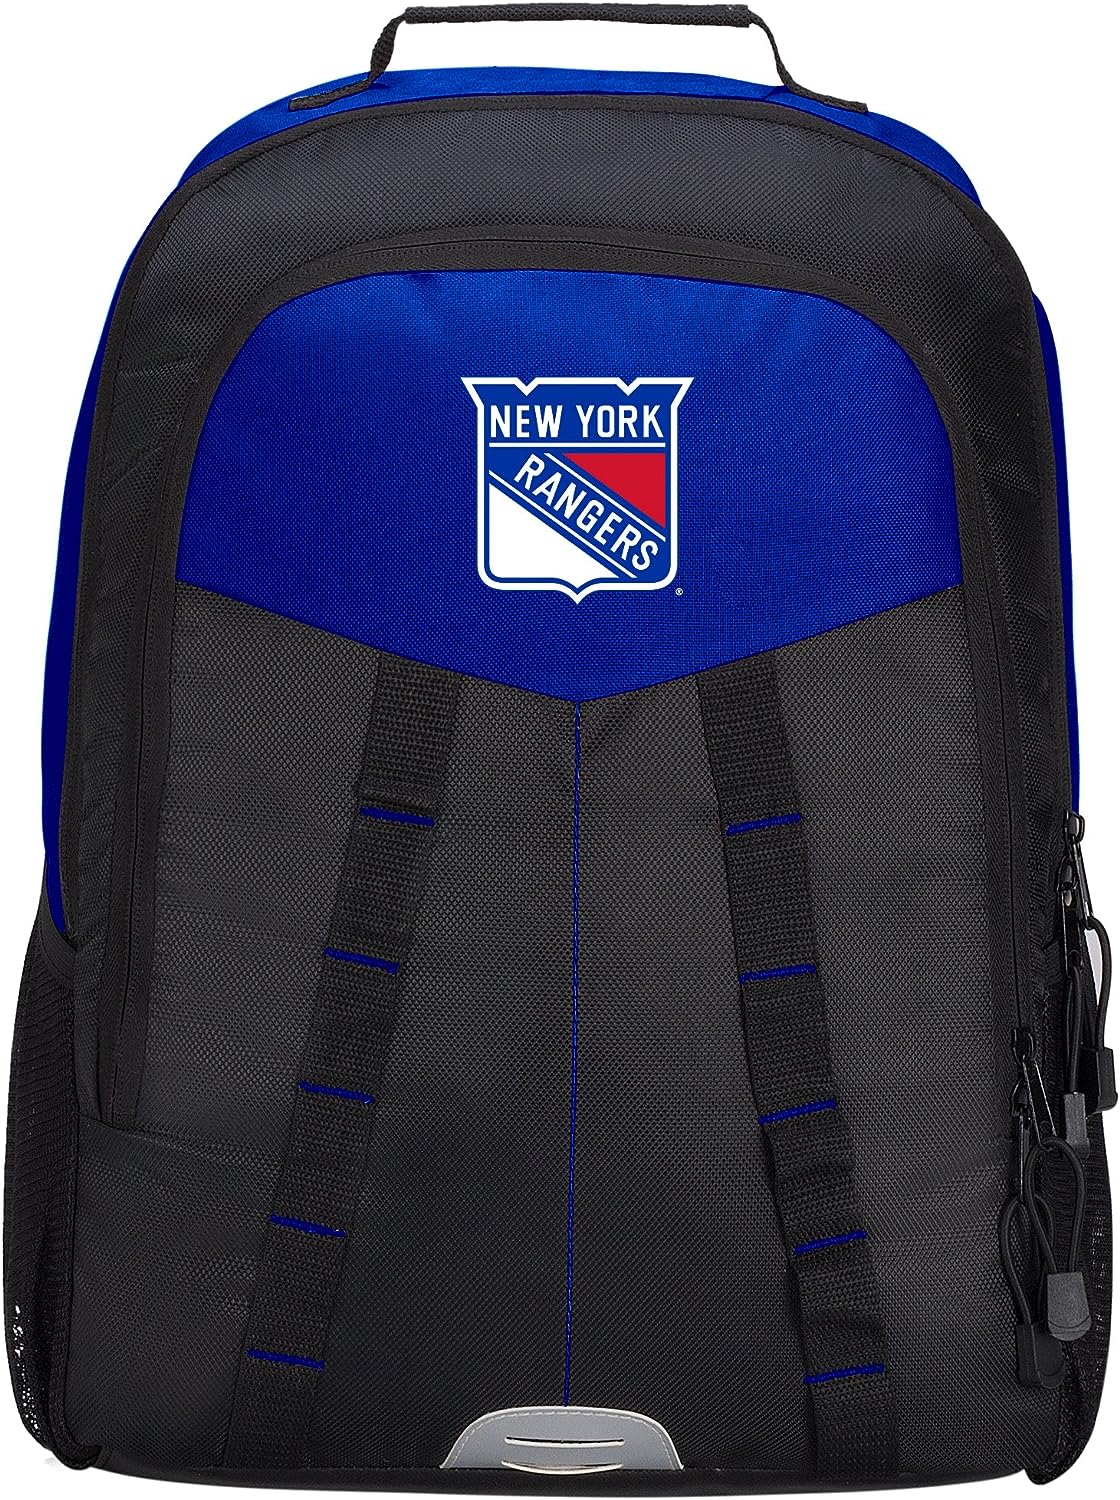 New York Rangers Backpack